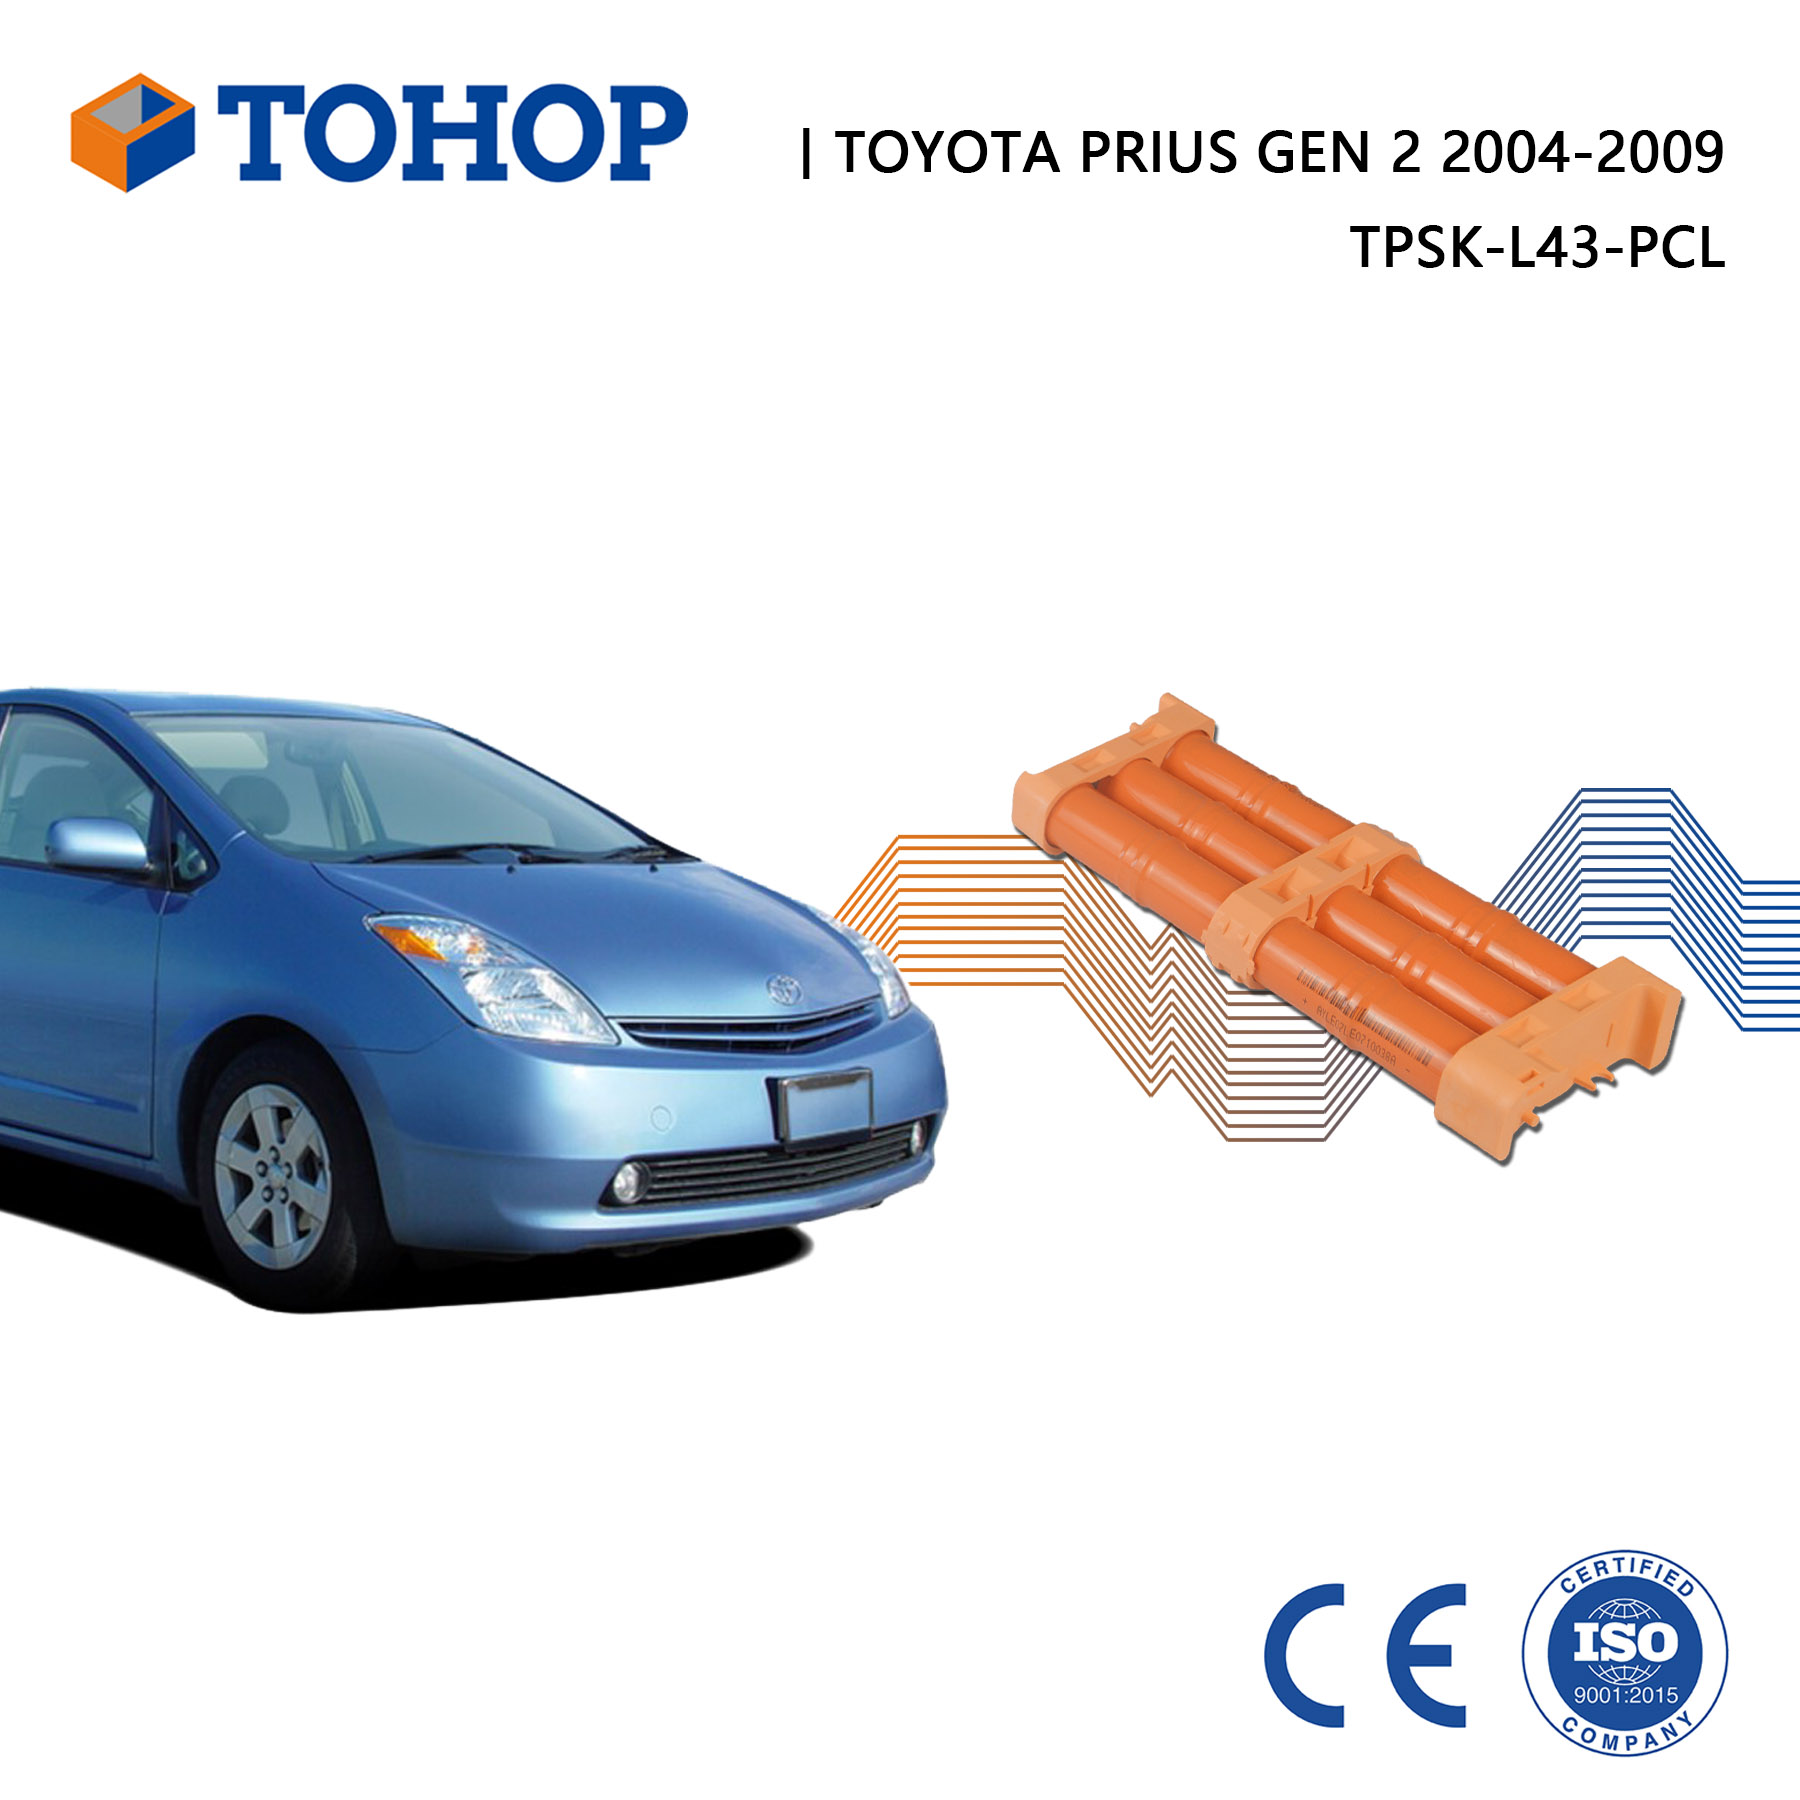 Sostituzione delle celle della batteria della nuova Toyota Prius Gen 2 da 14,4 V 6,5 Ah 2004-2009